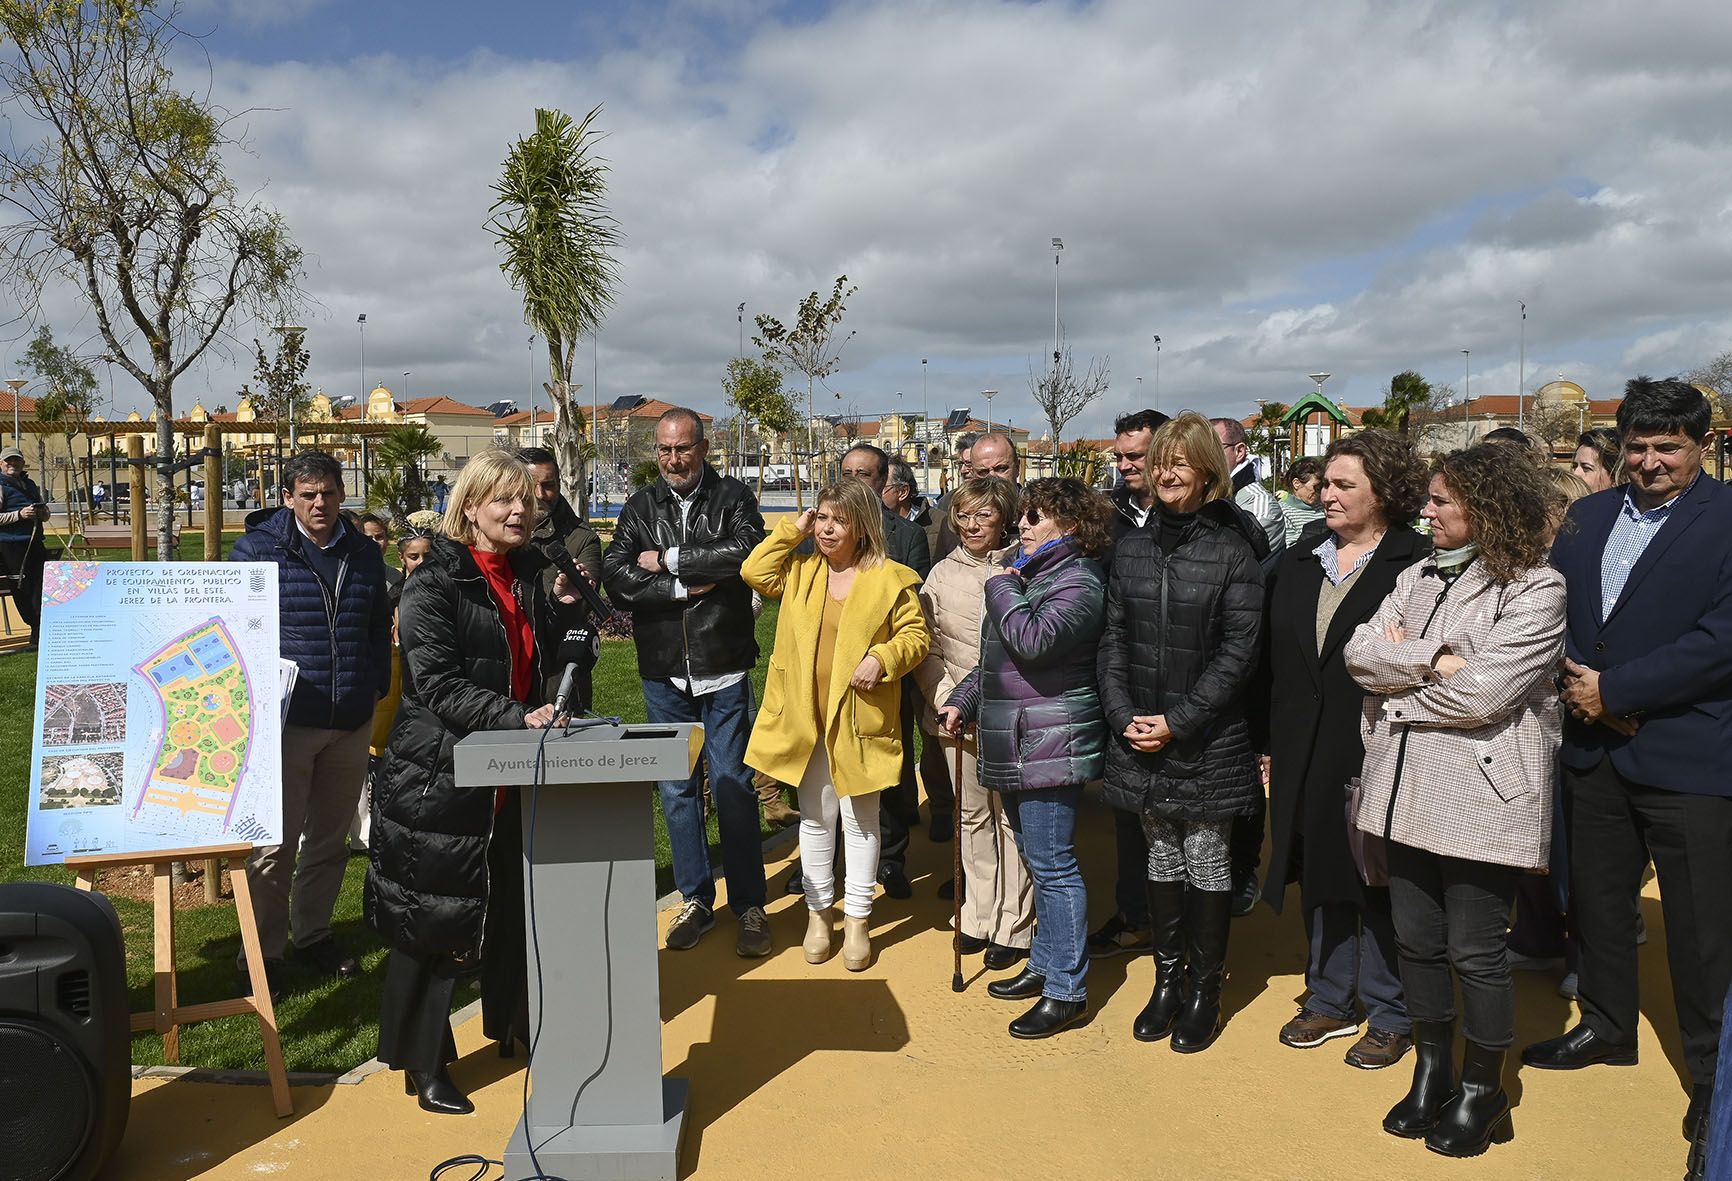 La alcaldesa María José García-Pelayo inaugura el parque deportivo y de ocio de Villas del Este junto a su impulsora, la ex alcaldesa Mamen Sánchez, este pasado lunes en Jerez.